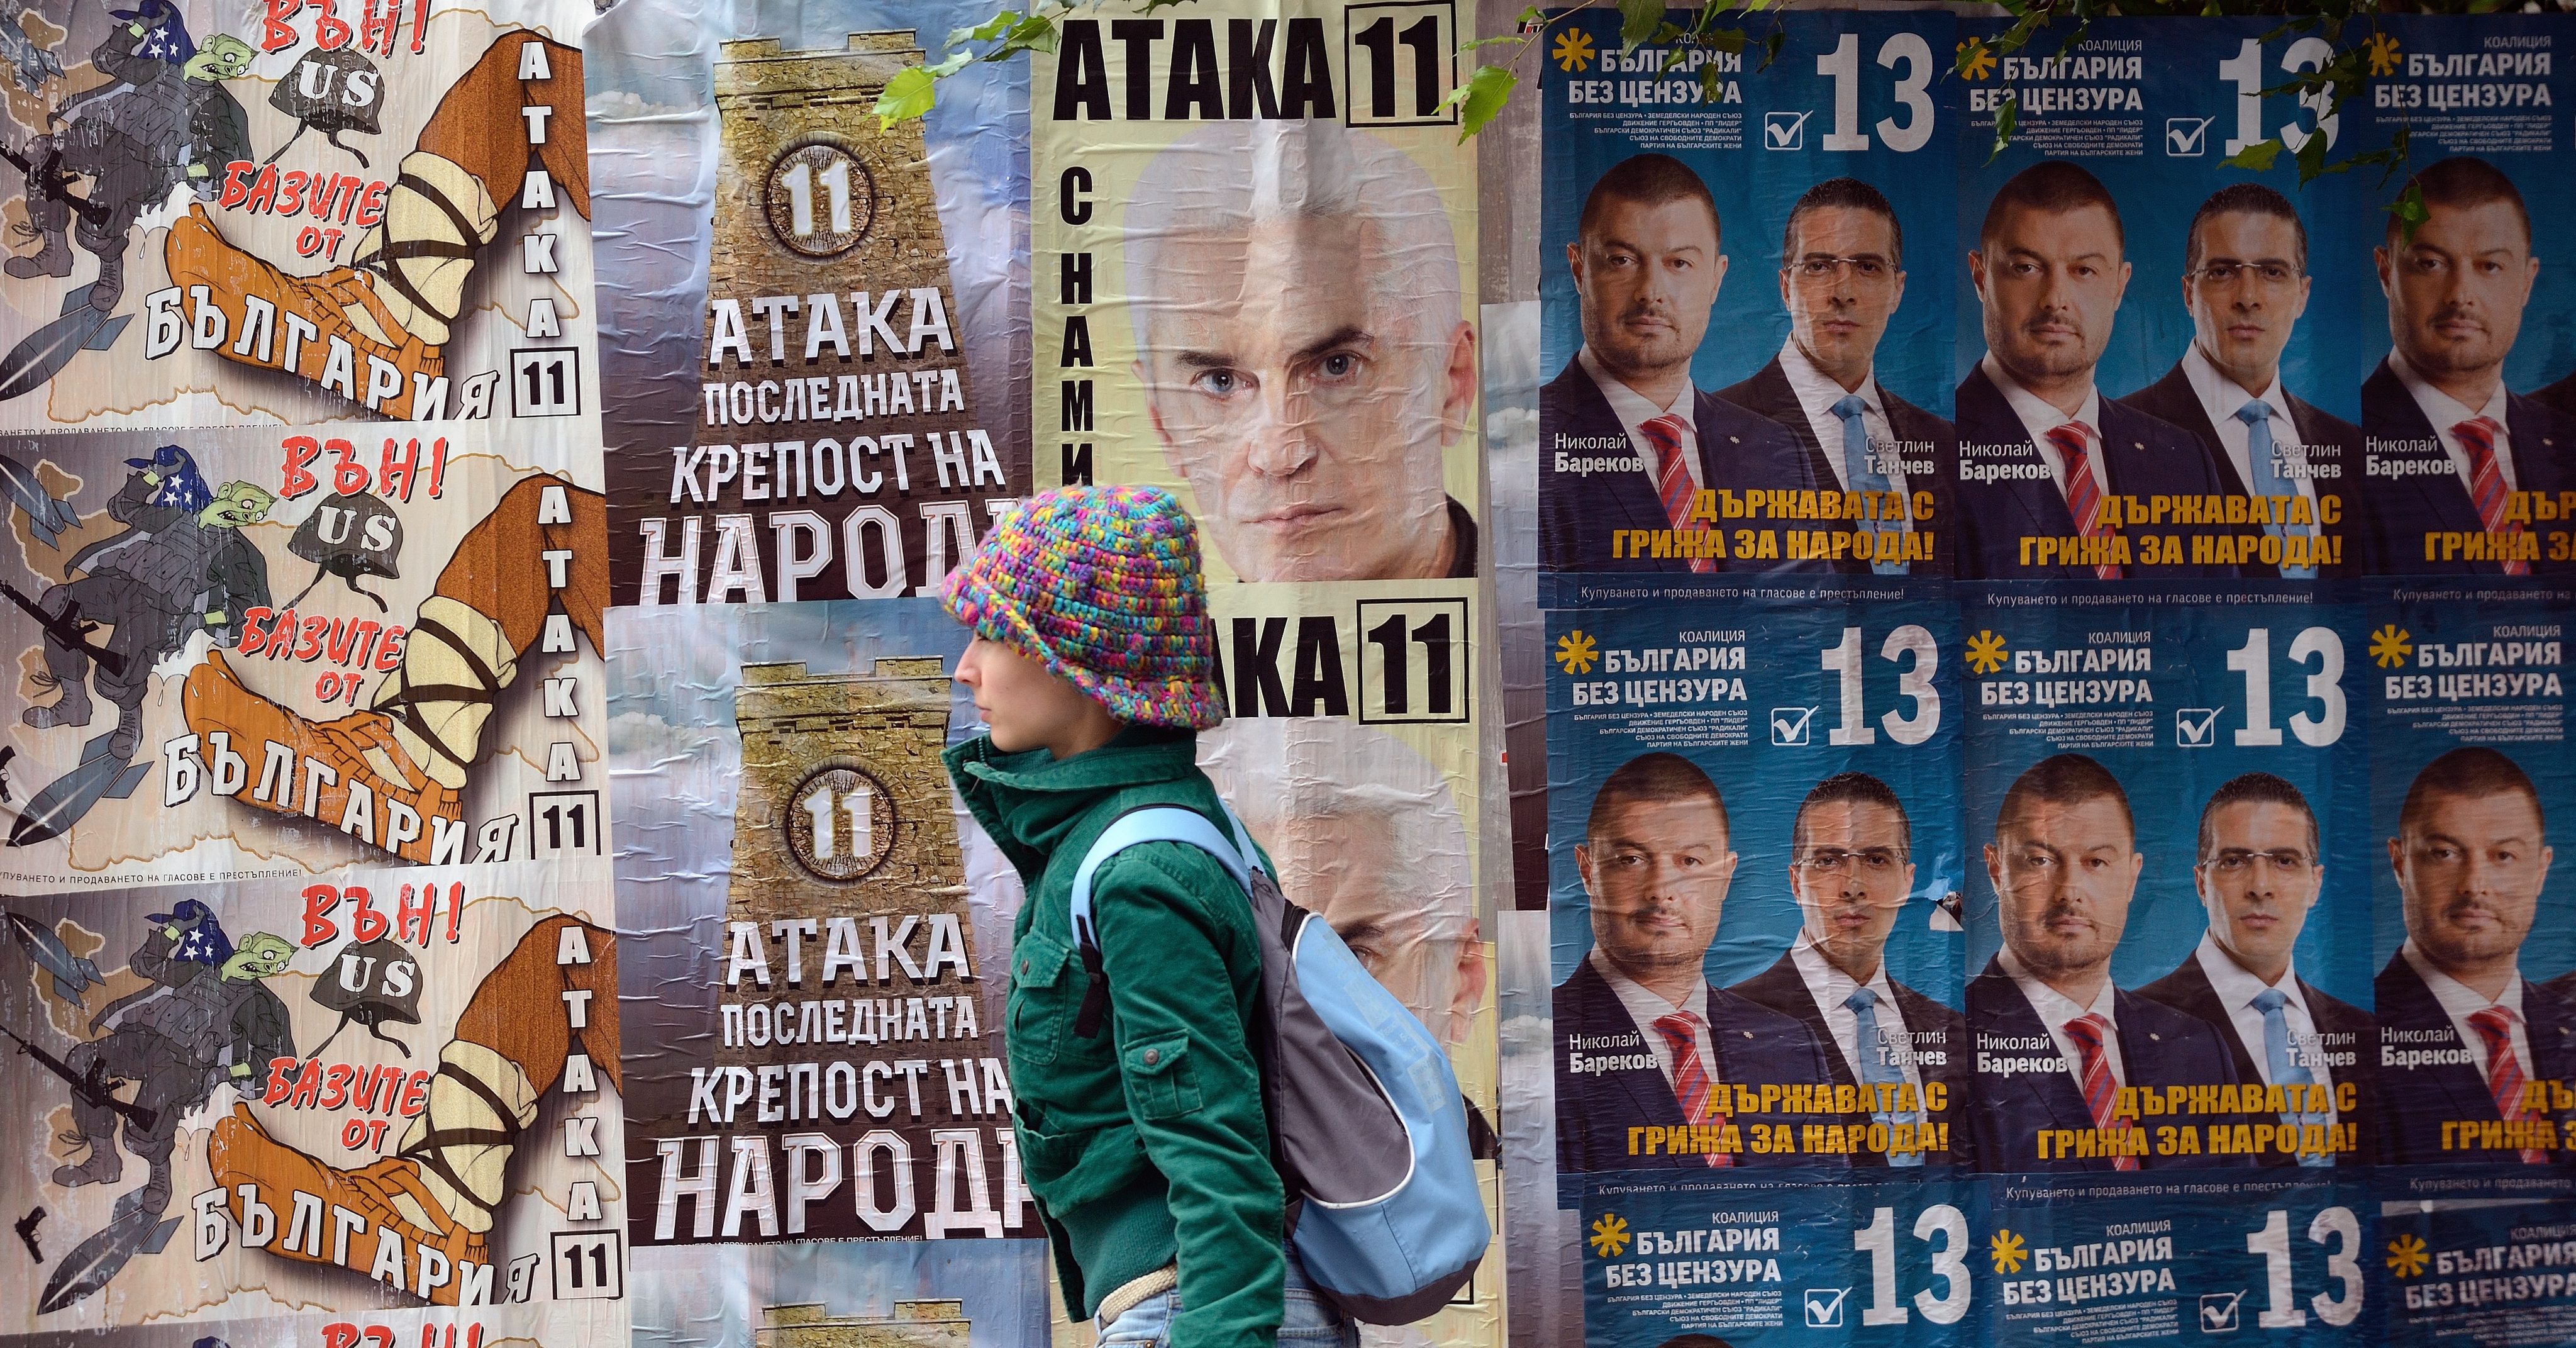 «Σύγκρουση» Σόφιας - Άγκυρας εν όψει των εκλογών